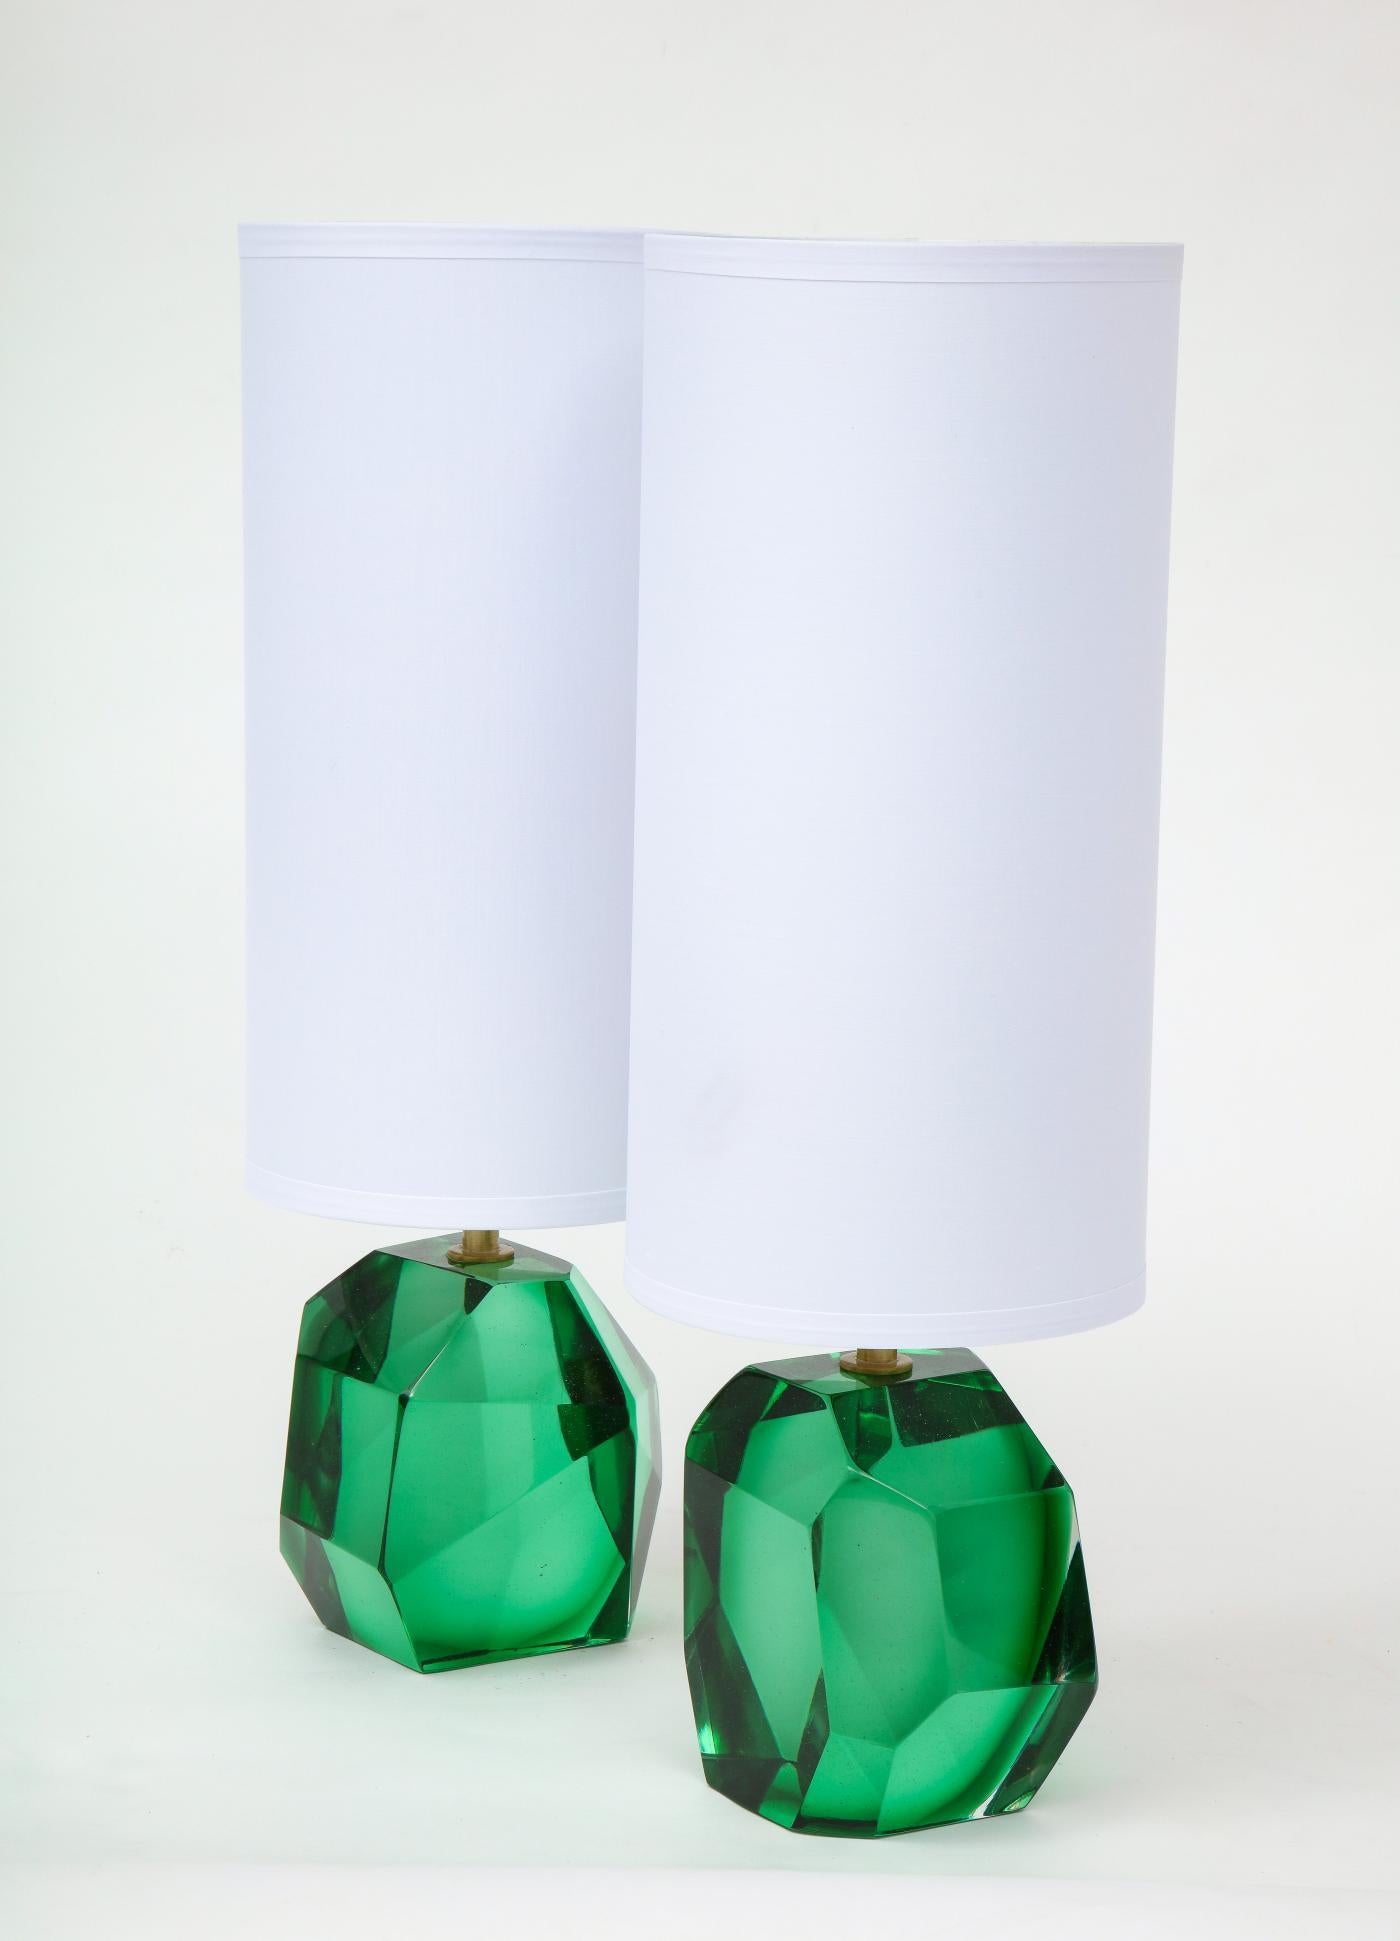 Einzigartiges Paar massiver facettierter Murano-Glas-Tischlampen in einer lebendigen und kräftigen smaragdgrünen Farbe mit einer goldfarbenen oder Messing-Armatur, schwer und solide. Hergestellt in Handarbeit in Murano, Italien, vom